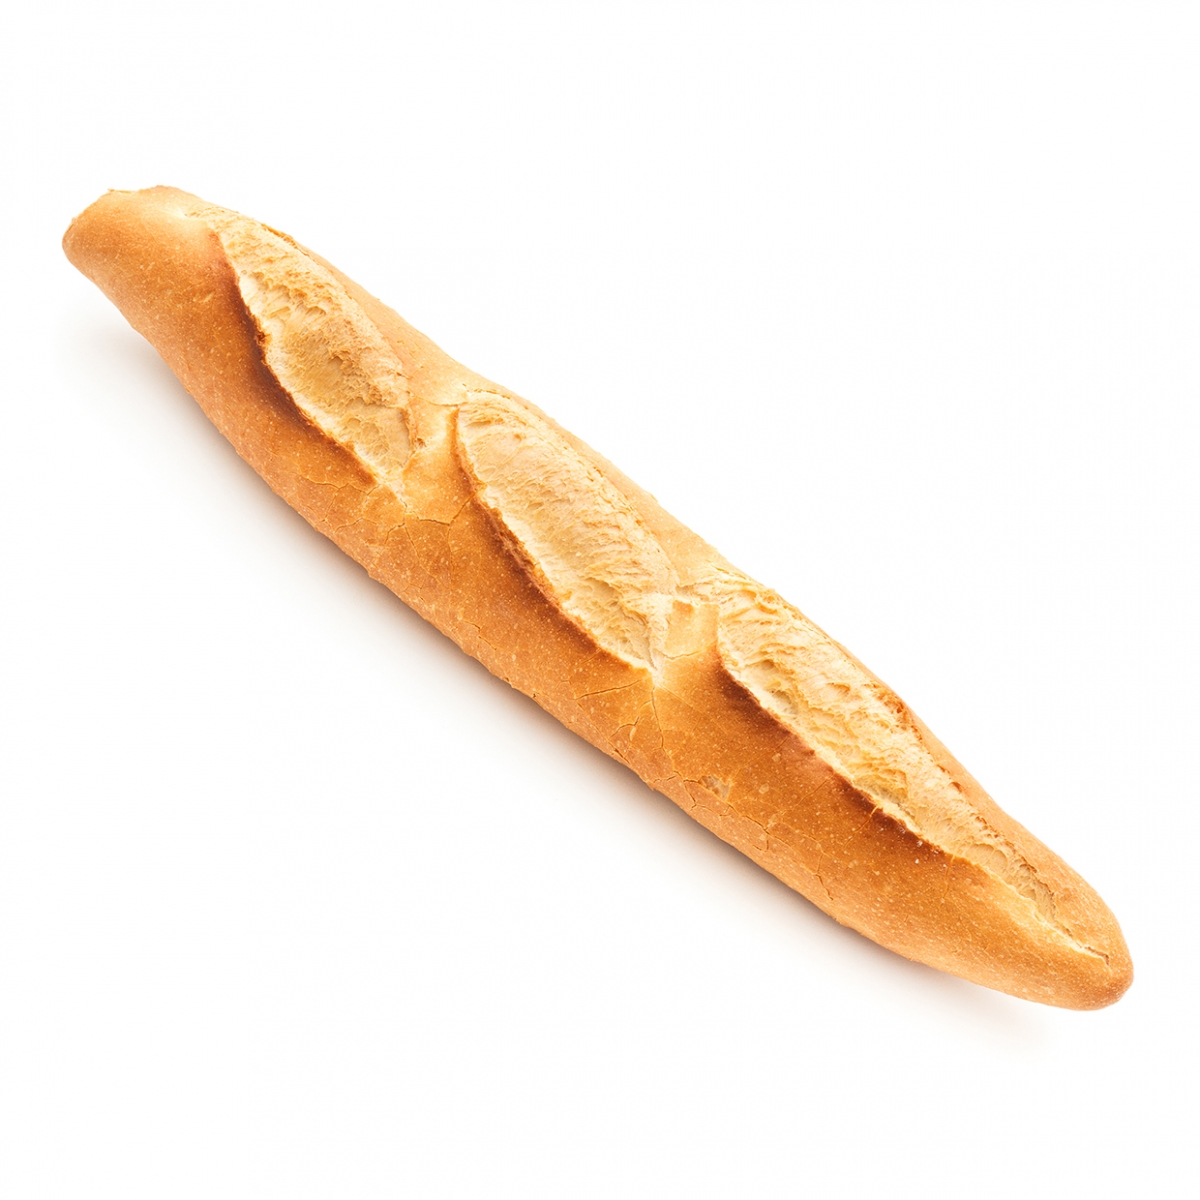 Imagen en la que se ve una barra de pan